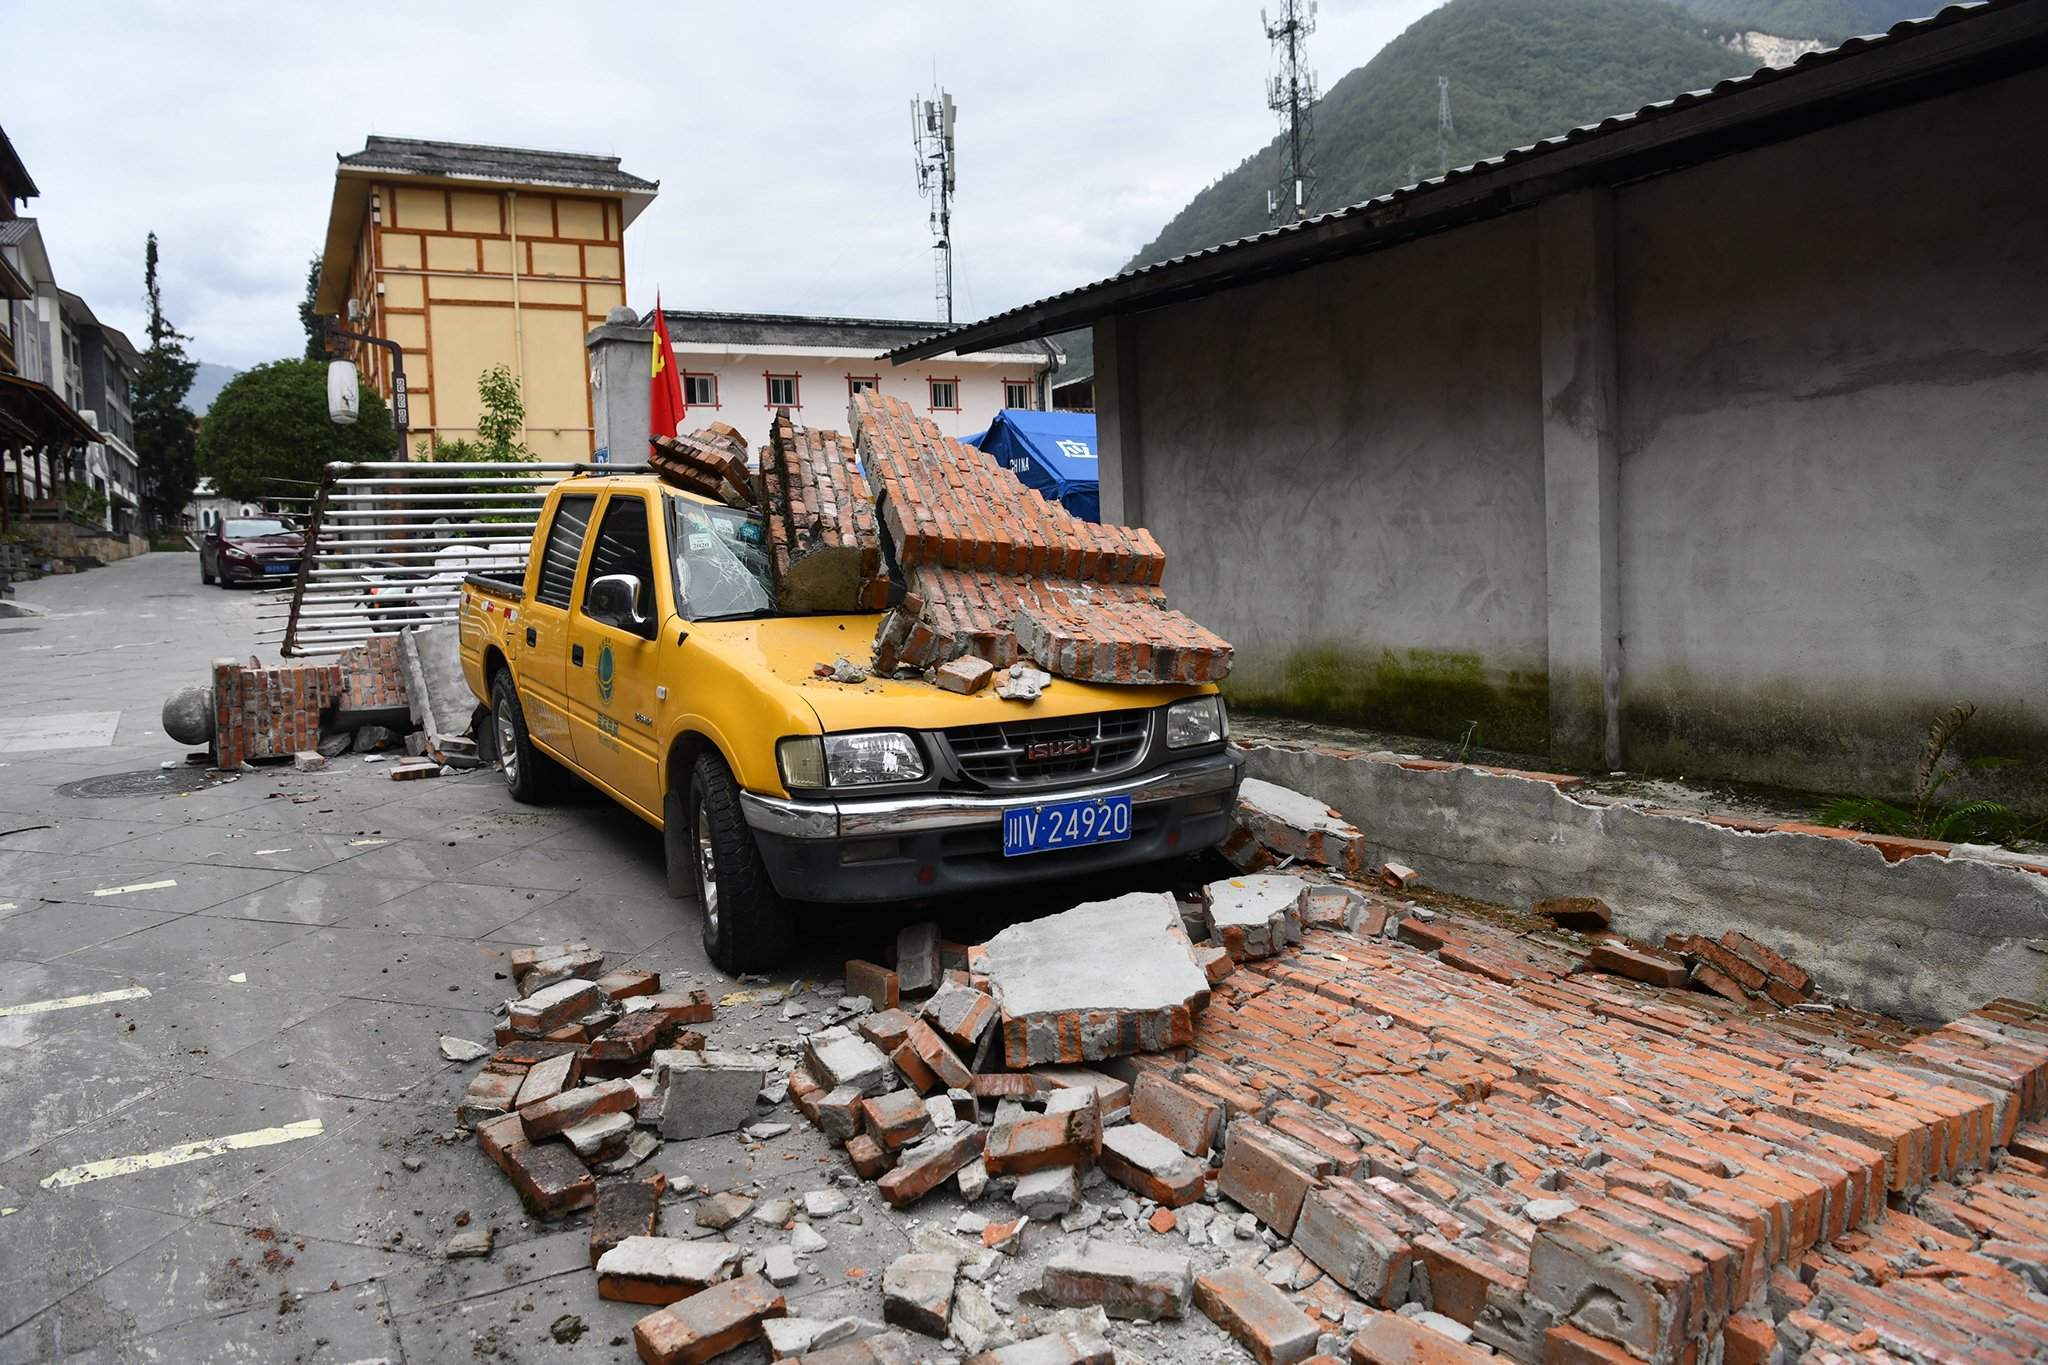 Khung cảnh tan hoang của trận động đất ở Tứ Xuyên, Trung Quốc